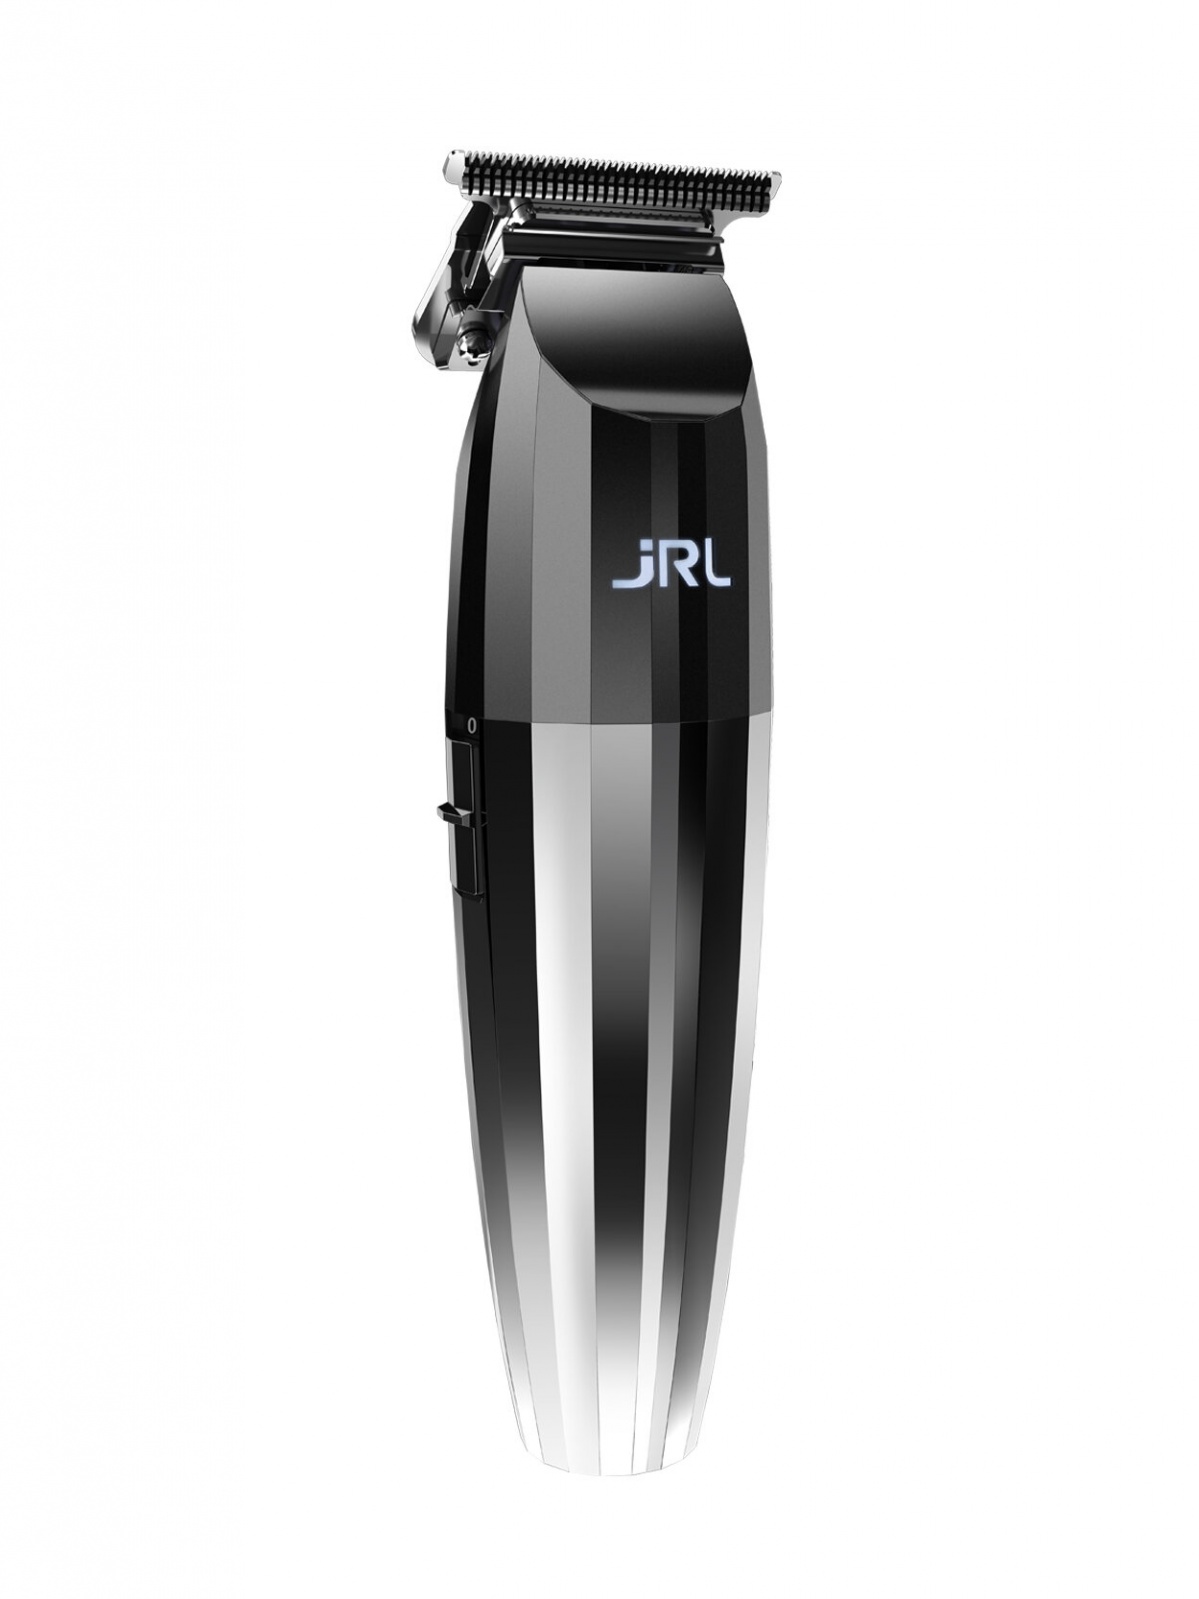 JRL FreshFade 2020T Silver Trimmer - profesionálny konturovací strojček na akumulátor + ﻿minerálny olej M22, 100 ml